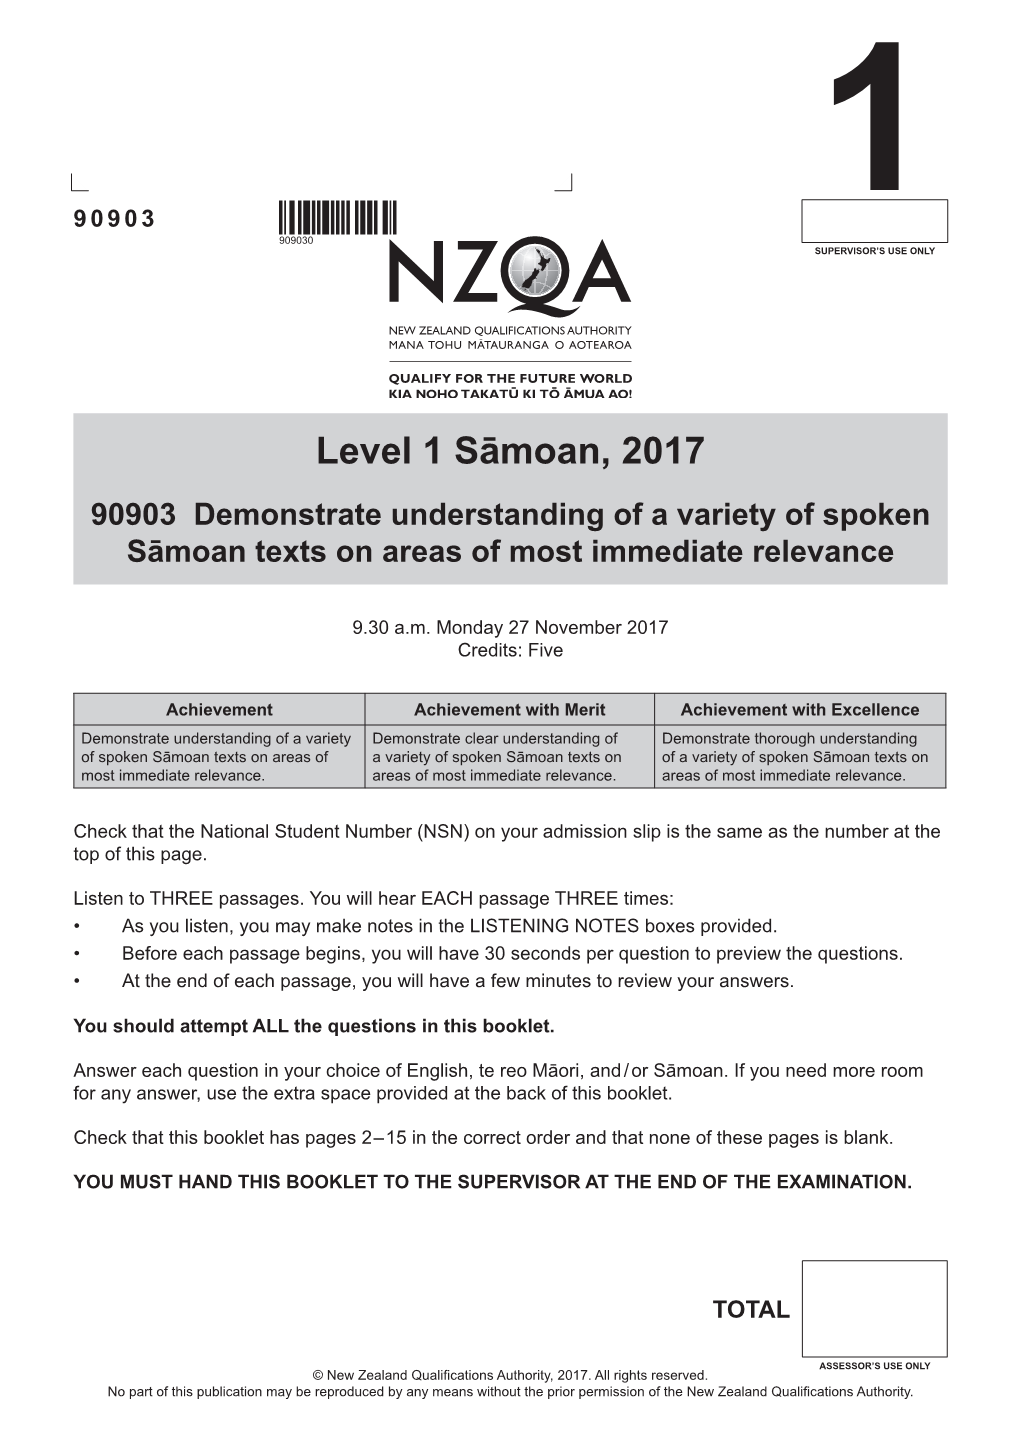 Level 1 Samoan (90903) 2017